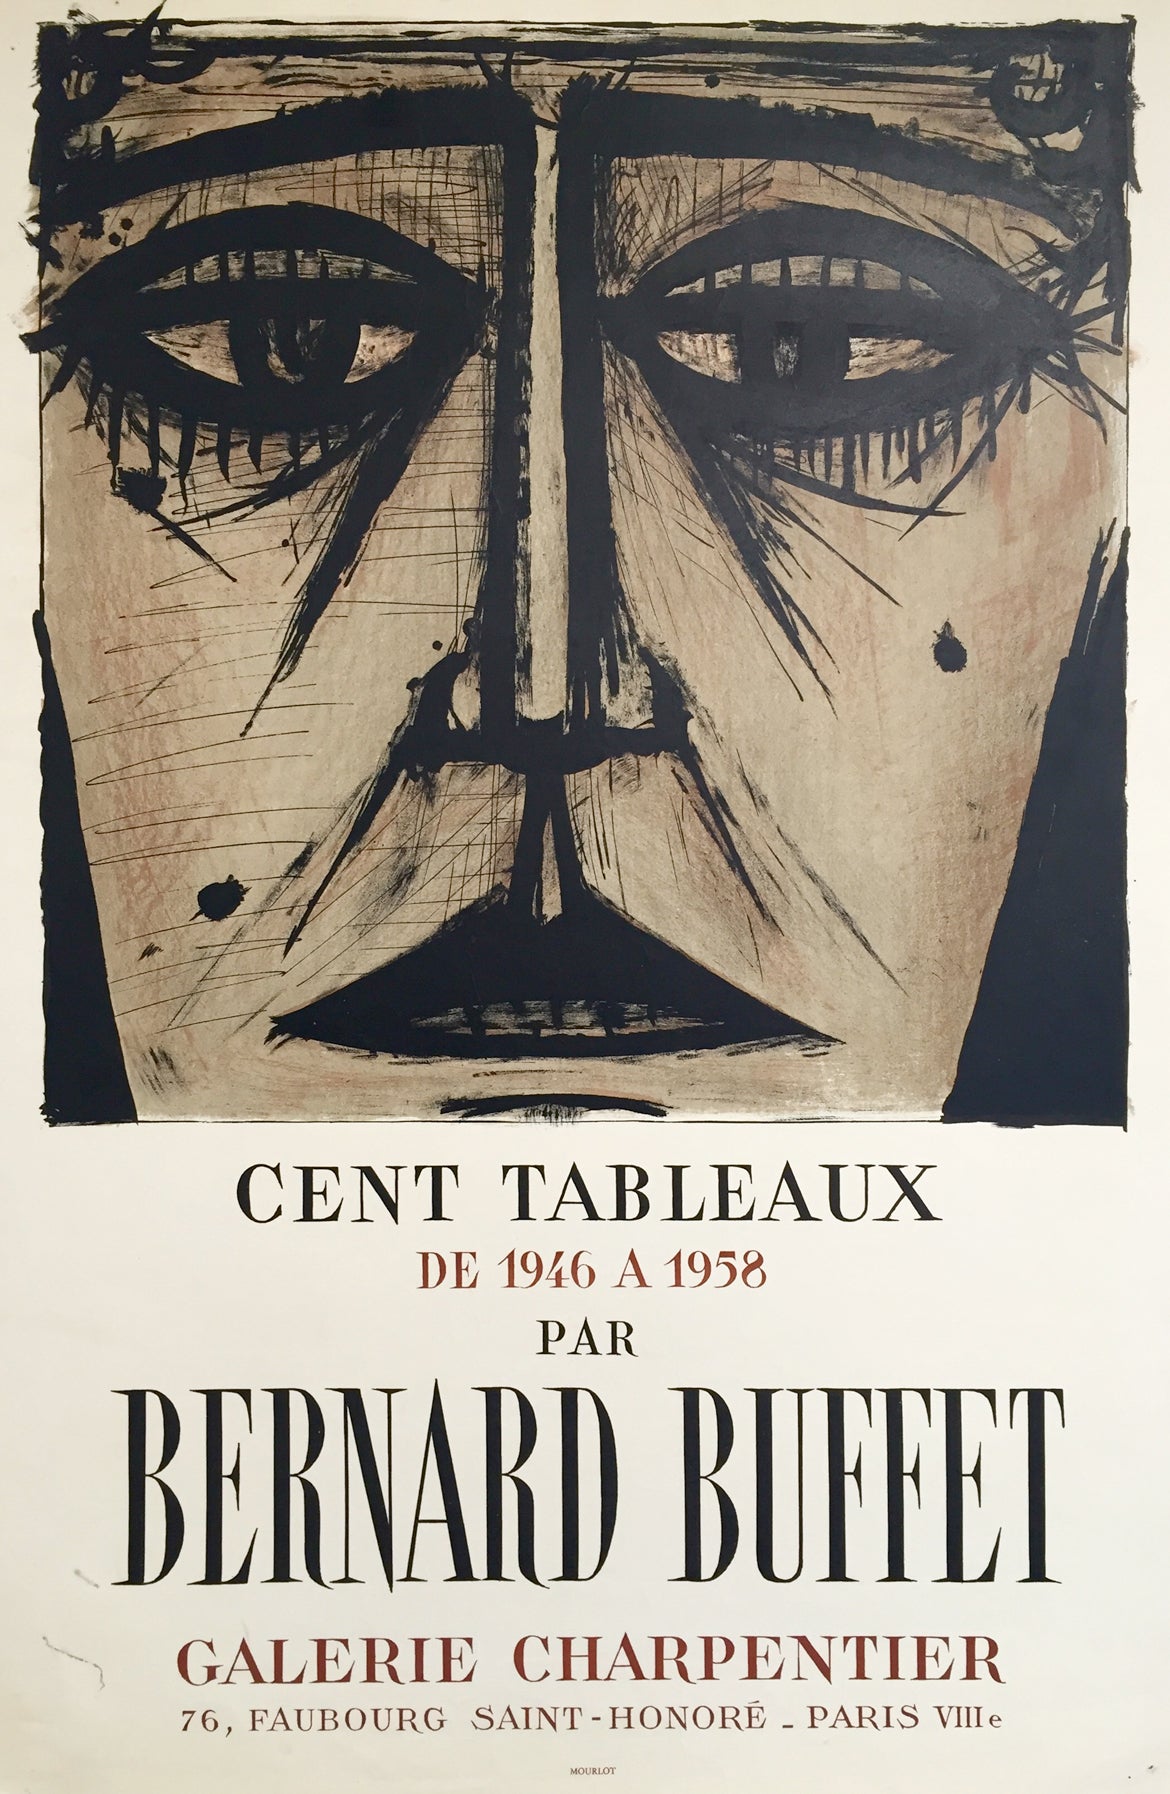 Affiche Galerie Charpentier "Cent Tableaux" Bernard Buffet, 1958